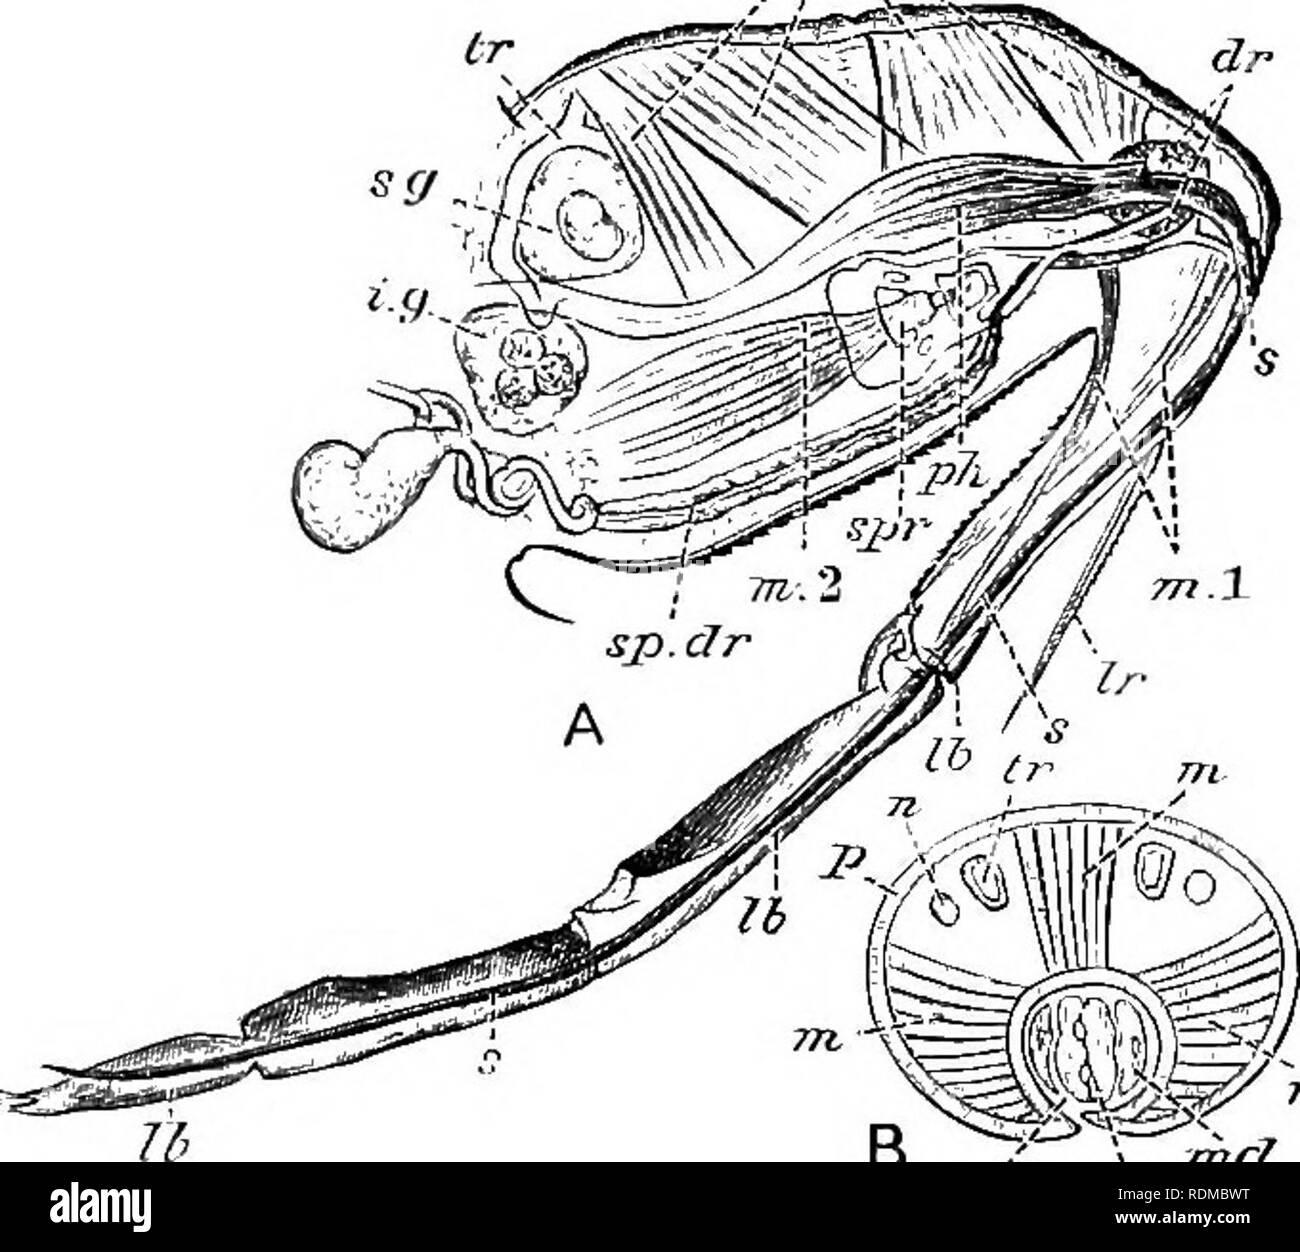 . L'histoire naturelle de Cambridge. Zoologie. 535 structure au sens large avec des maxilles mandibulate des insectes, et la paire extérieure avec mandibules, a probablement raison. Mecznikow, qui a étudié l'embryologie,^ appuie ce point de vue pour Heteroptera, mais dit-il {t.c. p. 462), que dans les homoptères de l'embryon rudimentaire avec correspondant maxilles et mandibules disparaissent, et que les soies sont ensuite a produit à partir de la propre des organismes spéciaux qui sont d'abord d'une forme en forme de riposte ; le cou de la riposte de plus en plus allongés par la suite pour former le seta ; aussi que dans l'insecte hétéroptère qui dégage Banque D'Images